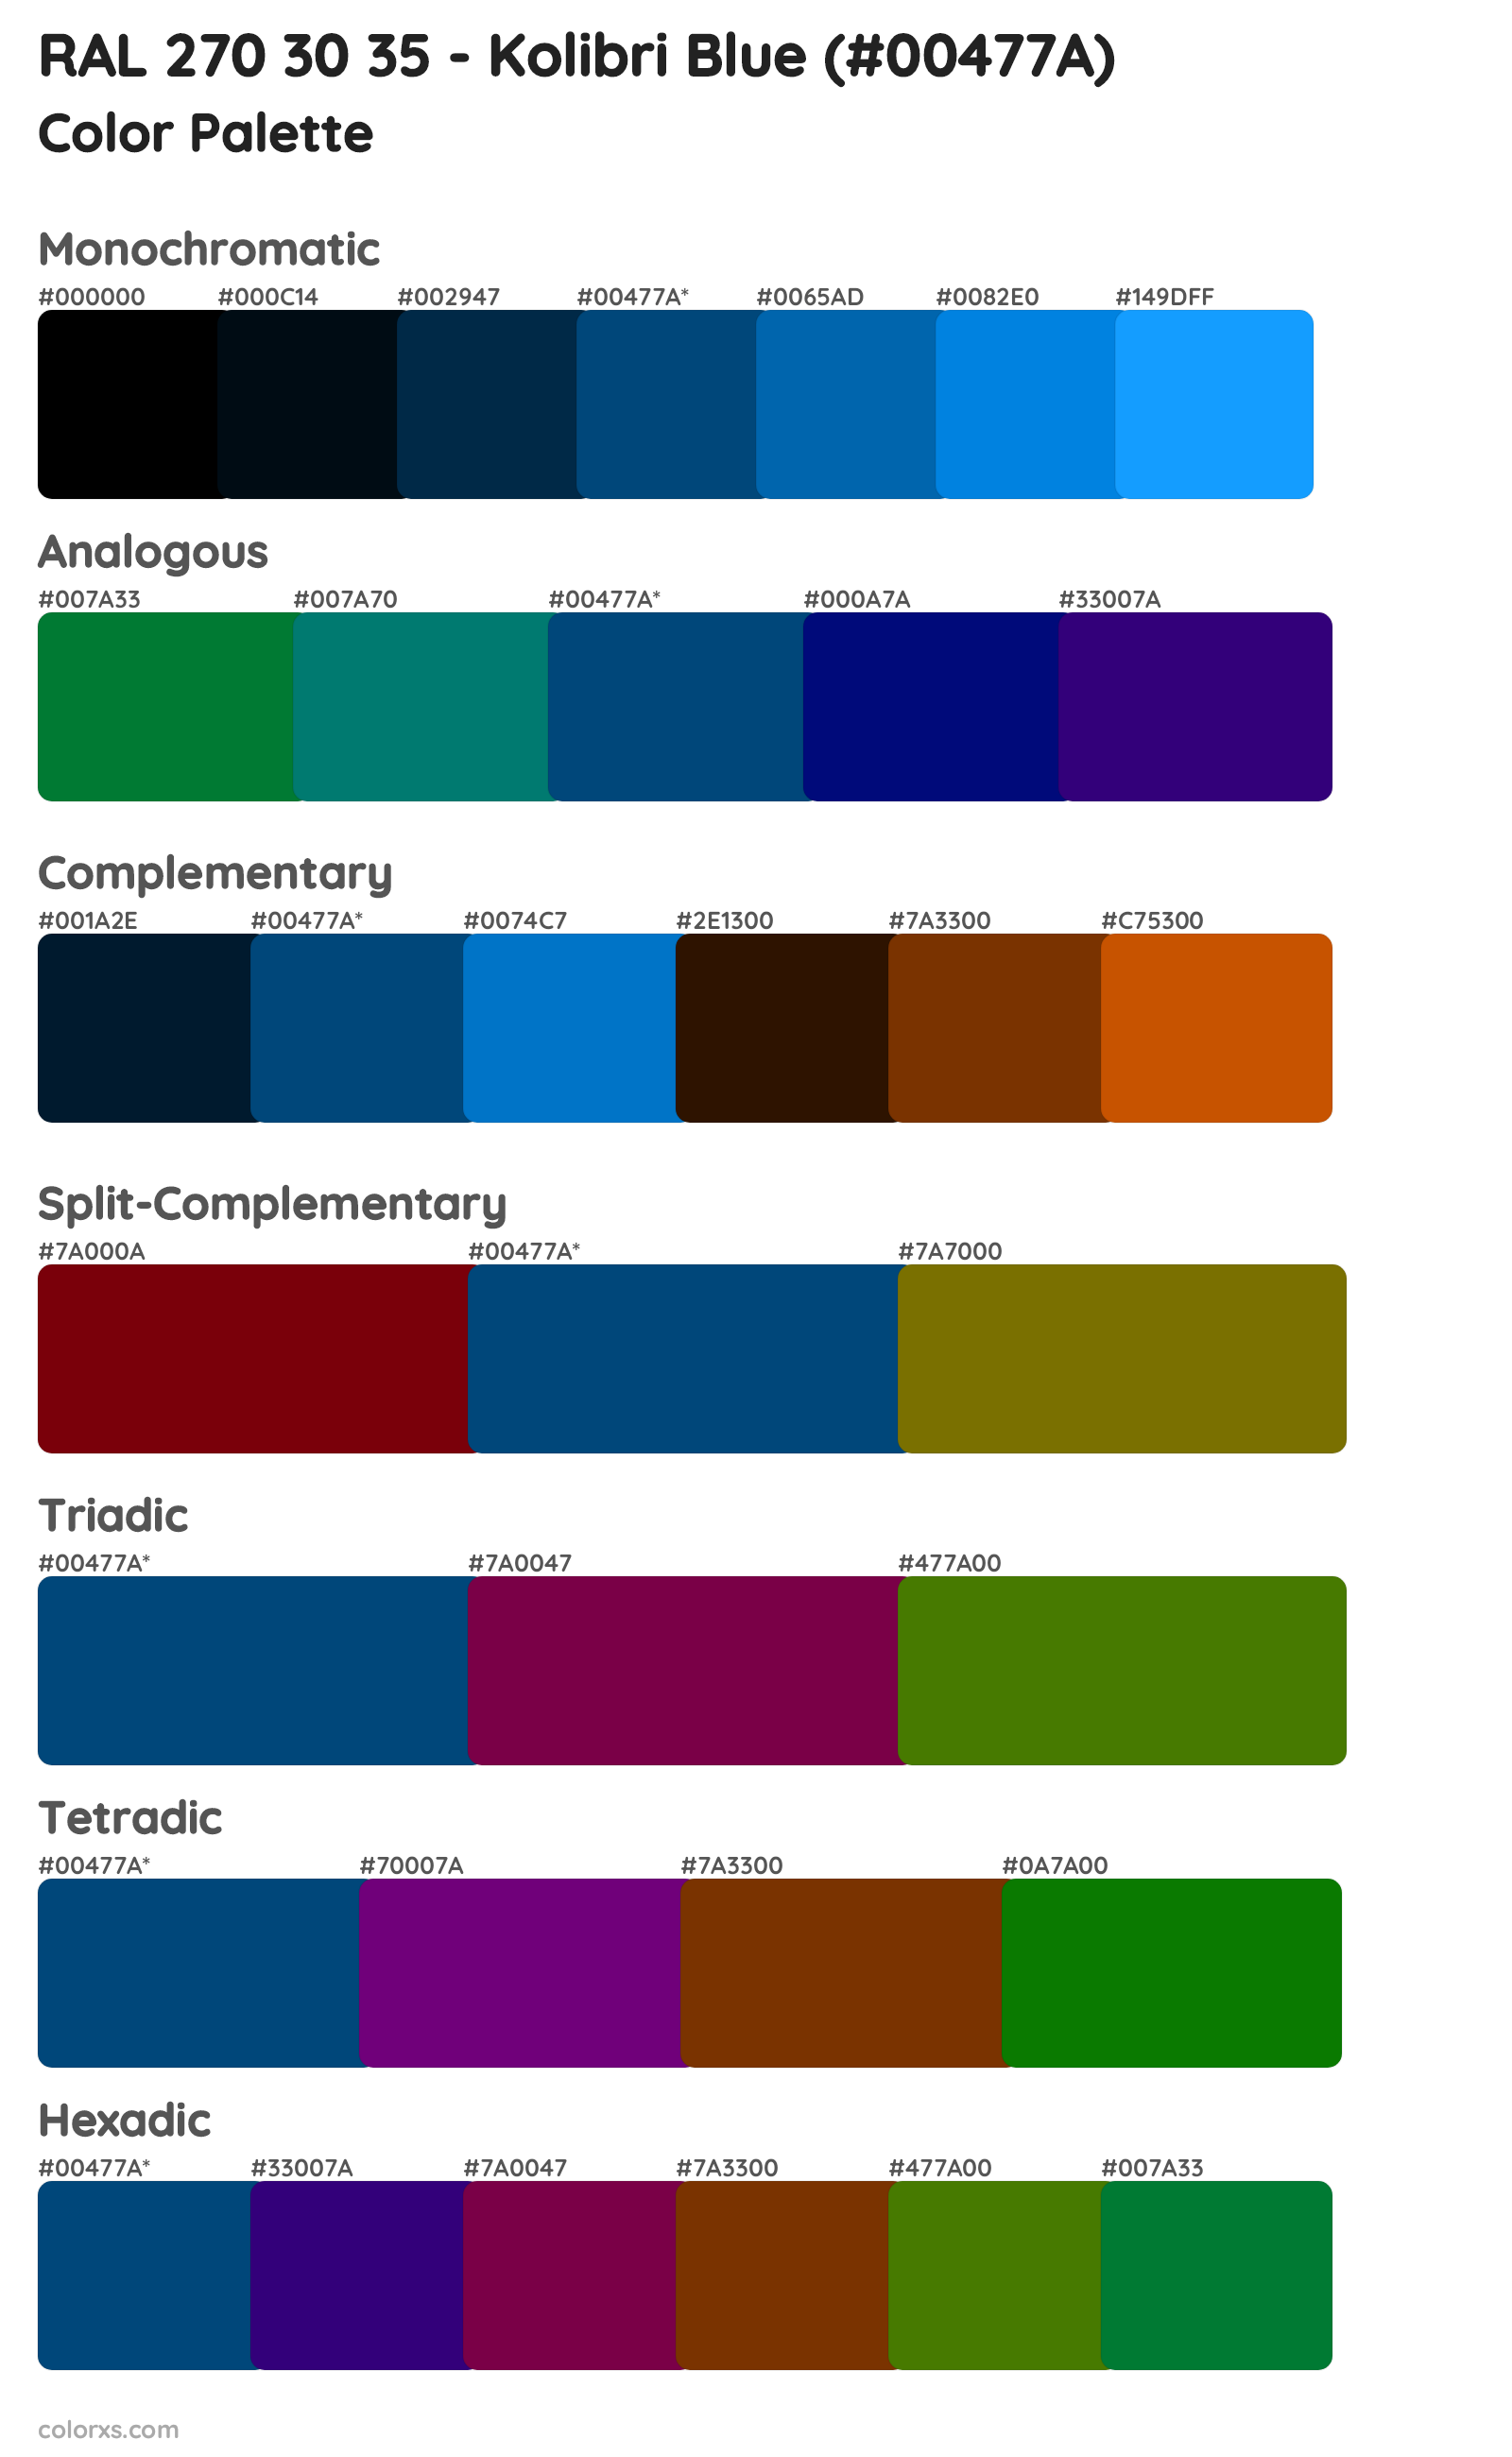 RAL 270 30 35 - Kolibri Blue Color Scheme Palettes